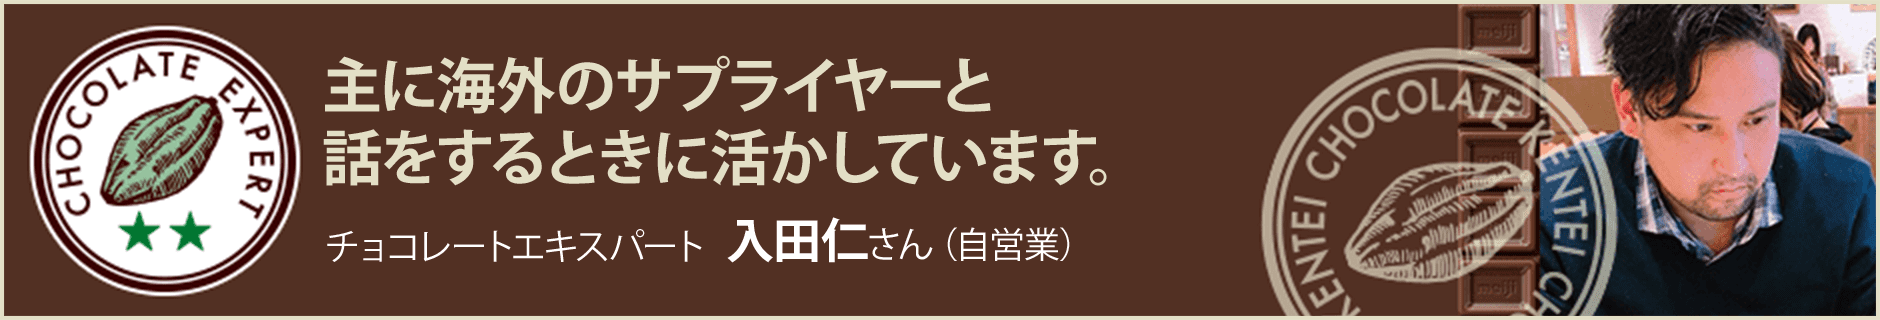 チョコレートエキスパート 入田仁さん